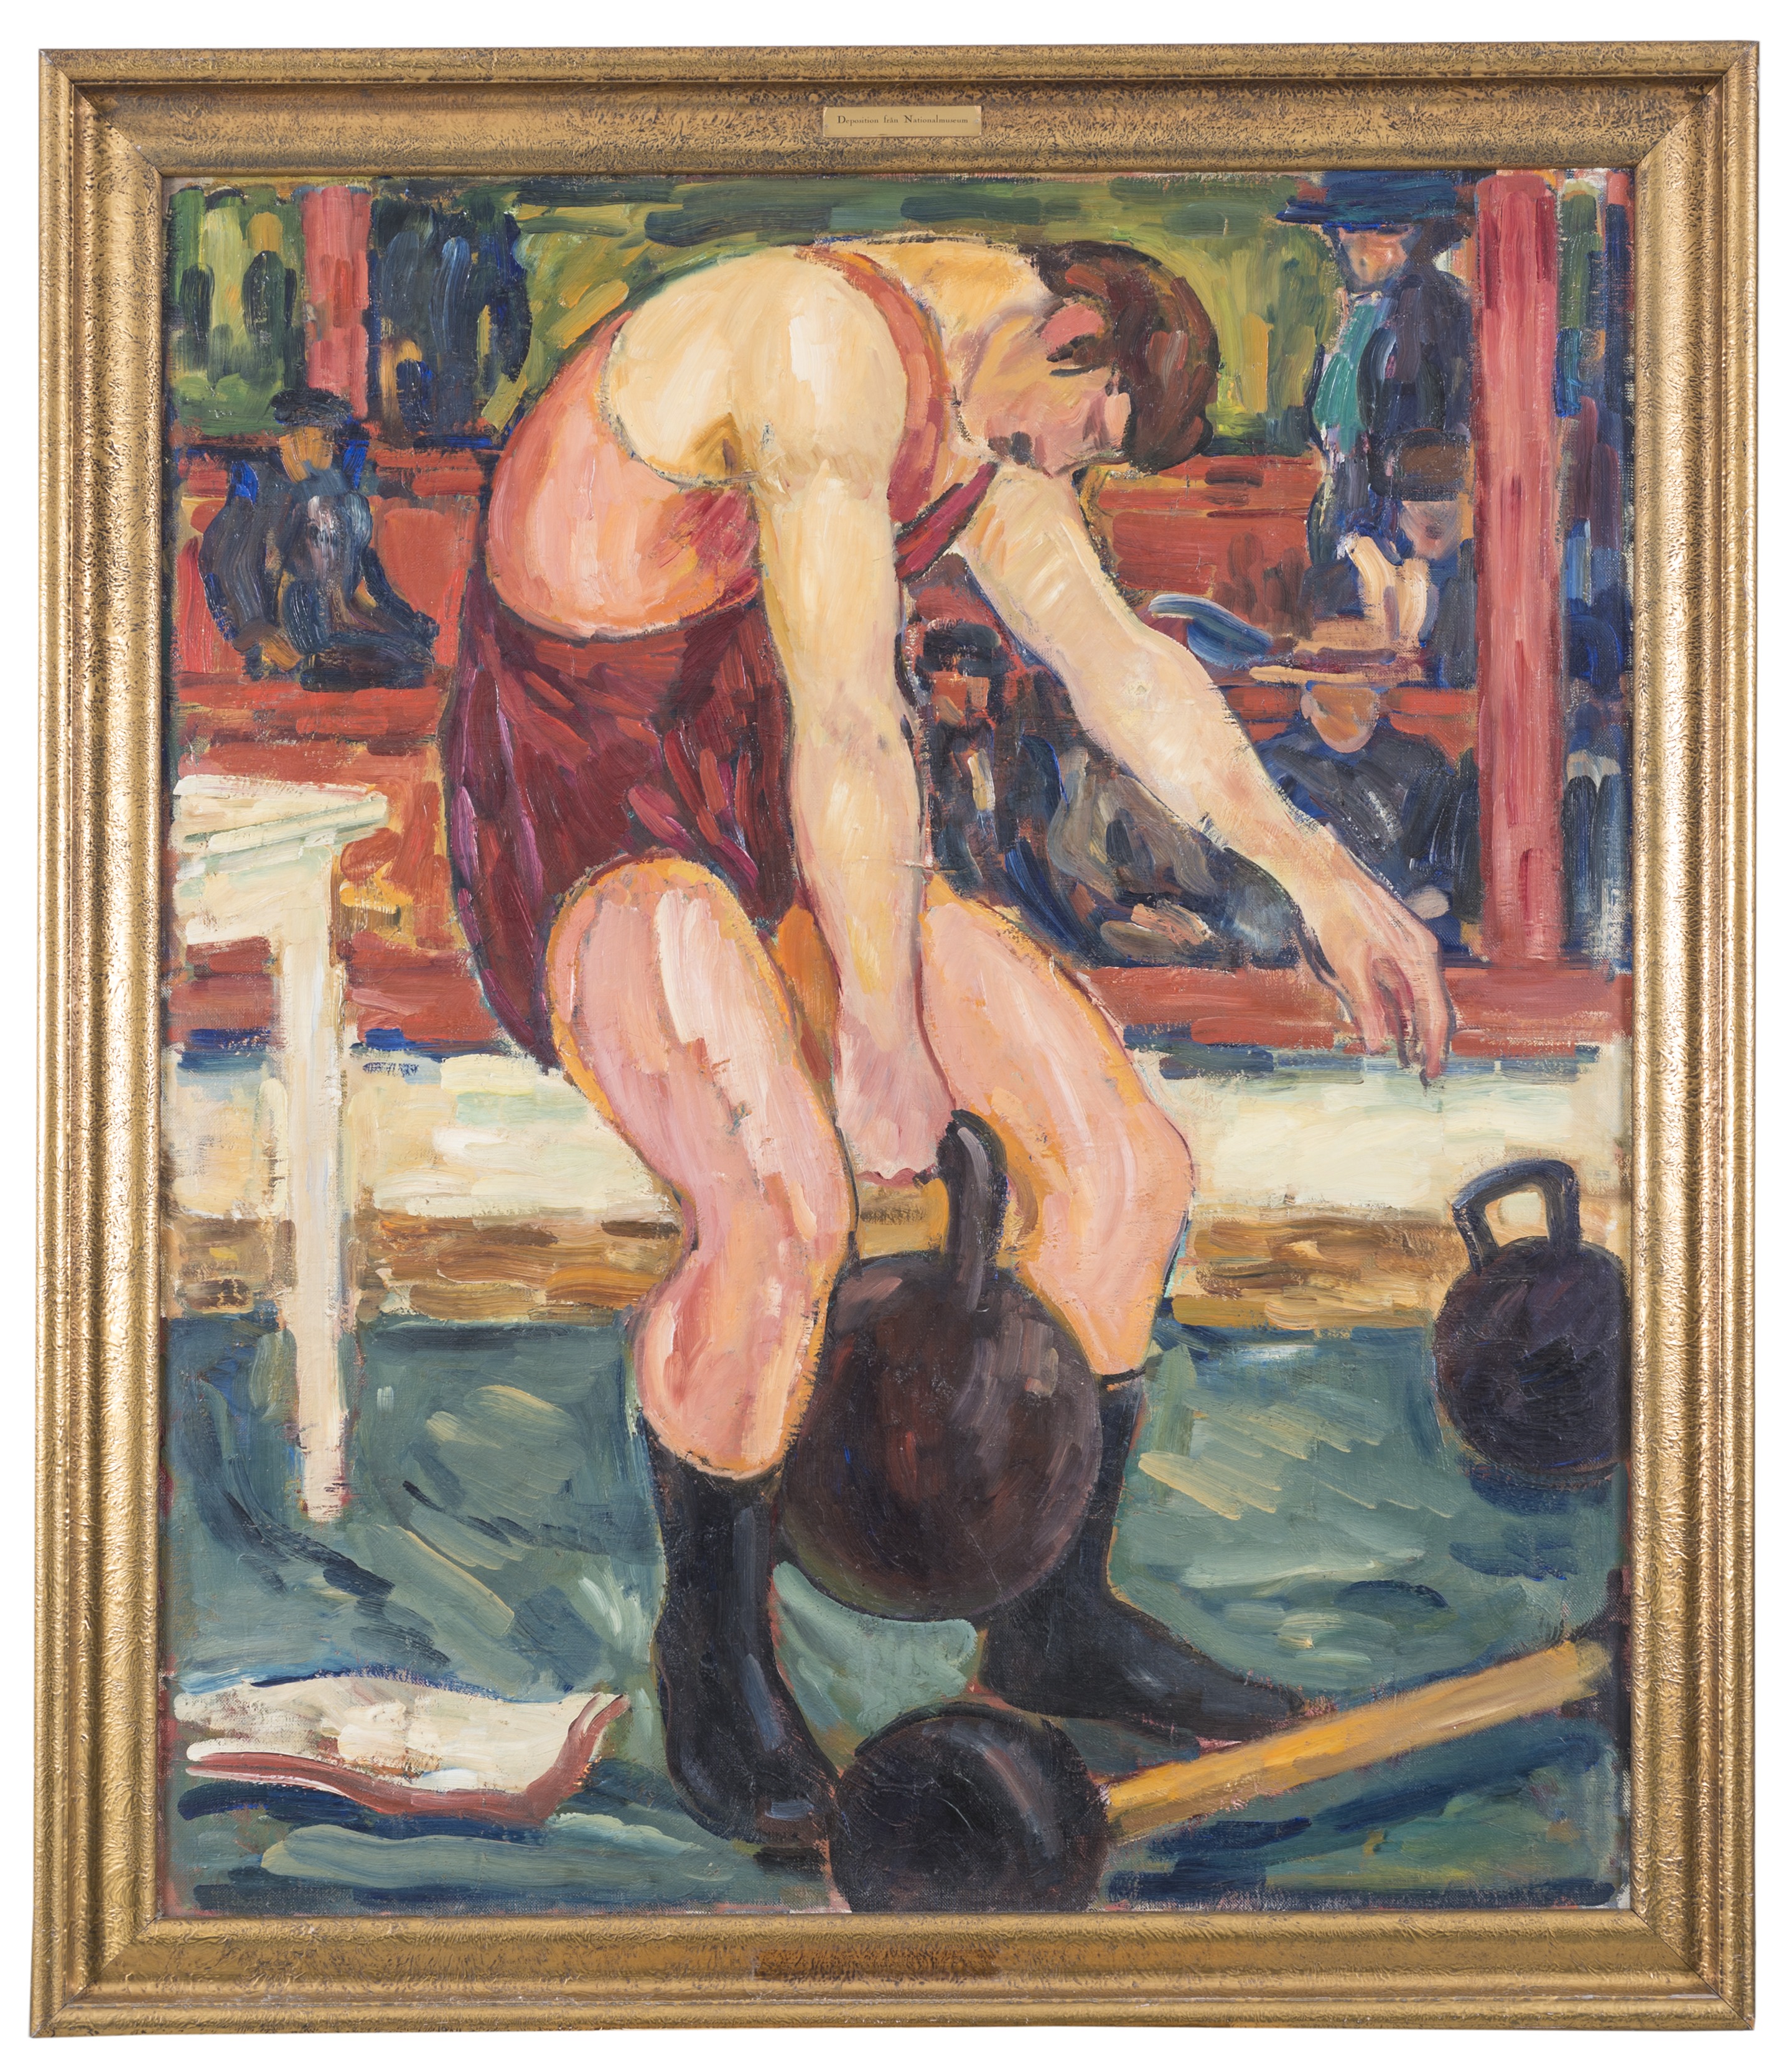 Atleti by Gösta von Hennigs - prima del 1941 - 141 x 119 cm Europeana